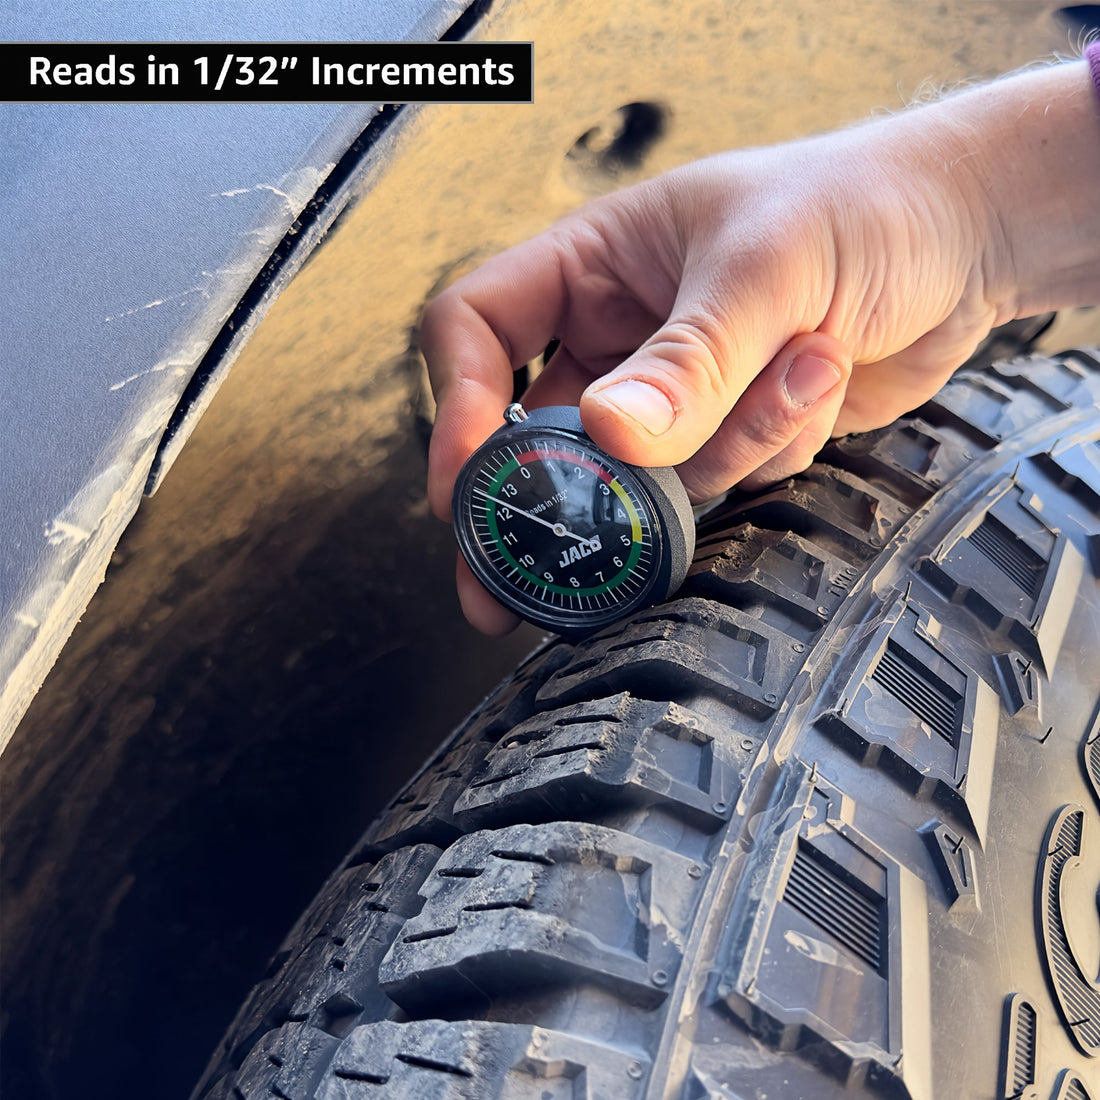 TreadPro Tire Tread Depth Gauge, Dial Type (Reads in 1/32 inch) - Diesel Freak